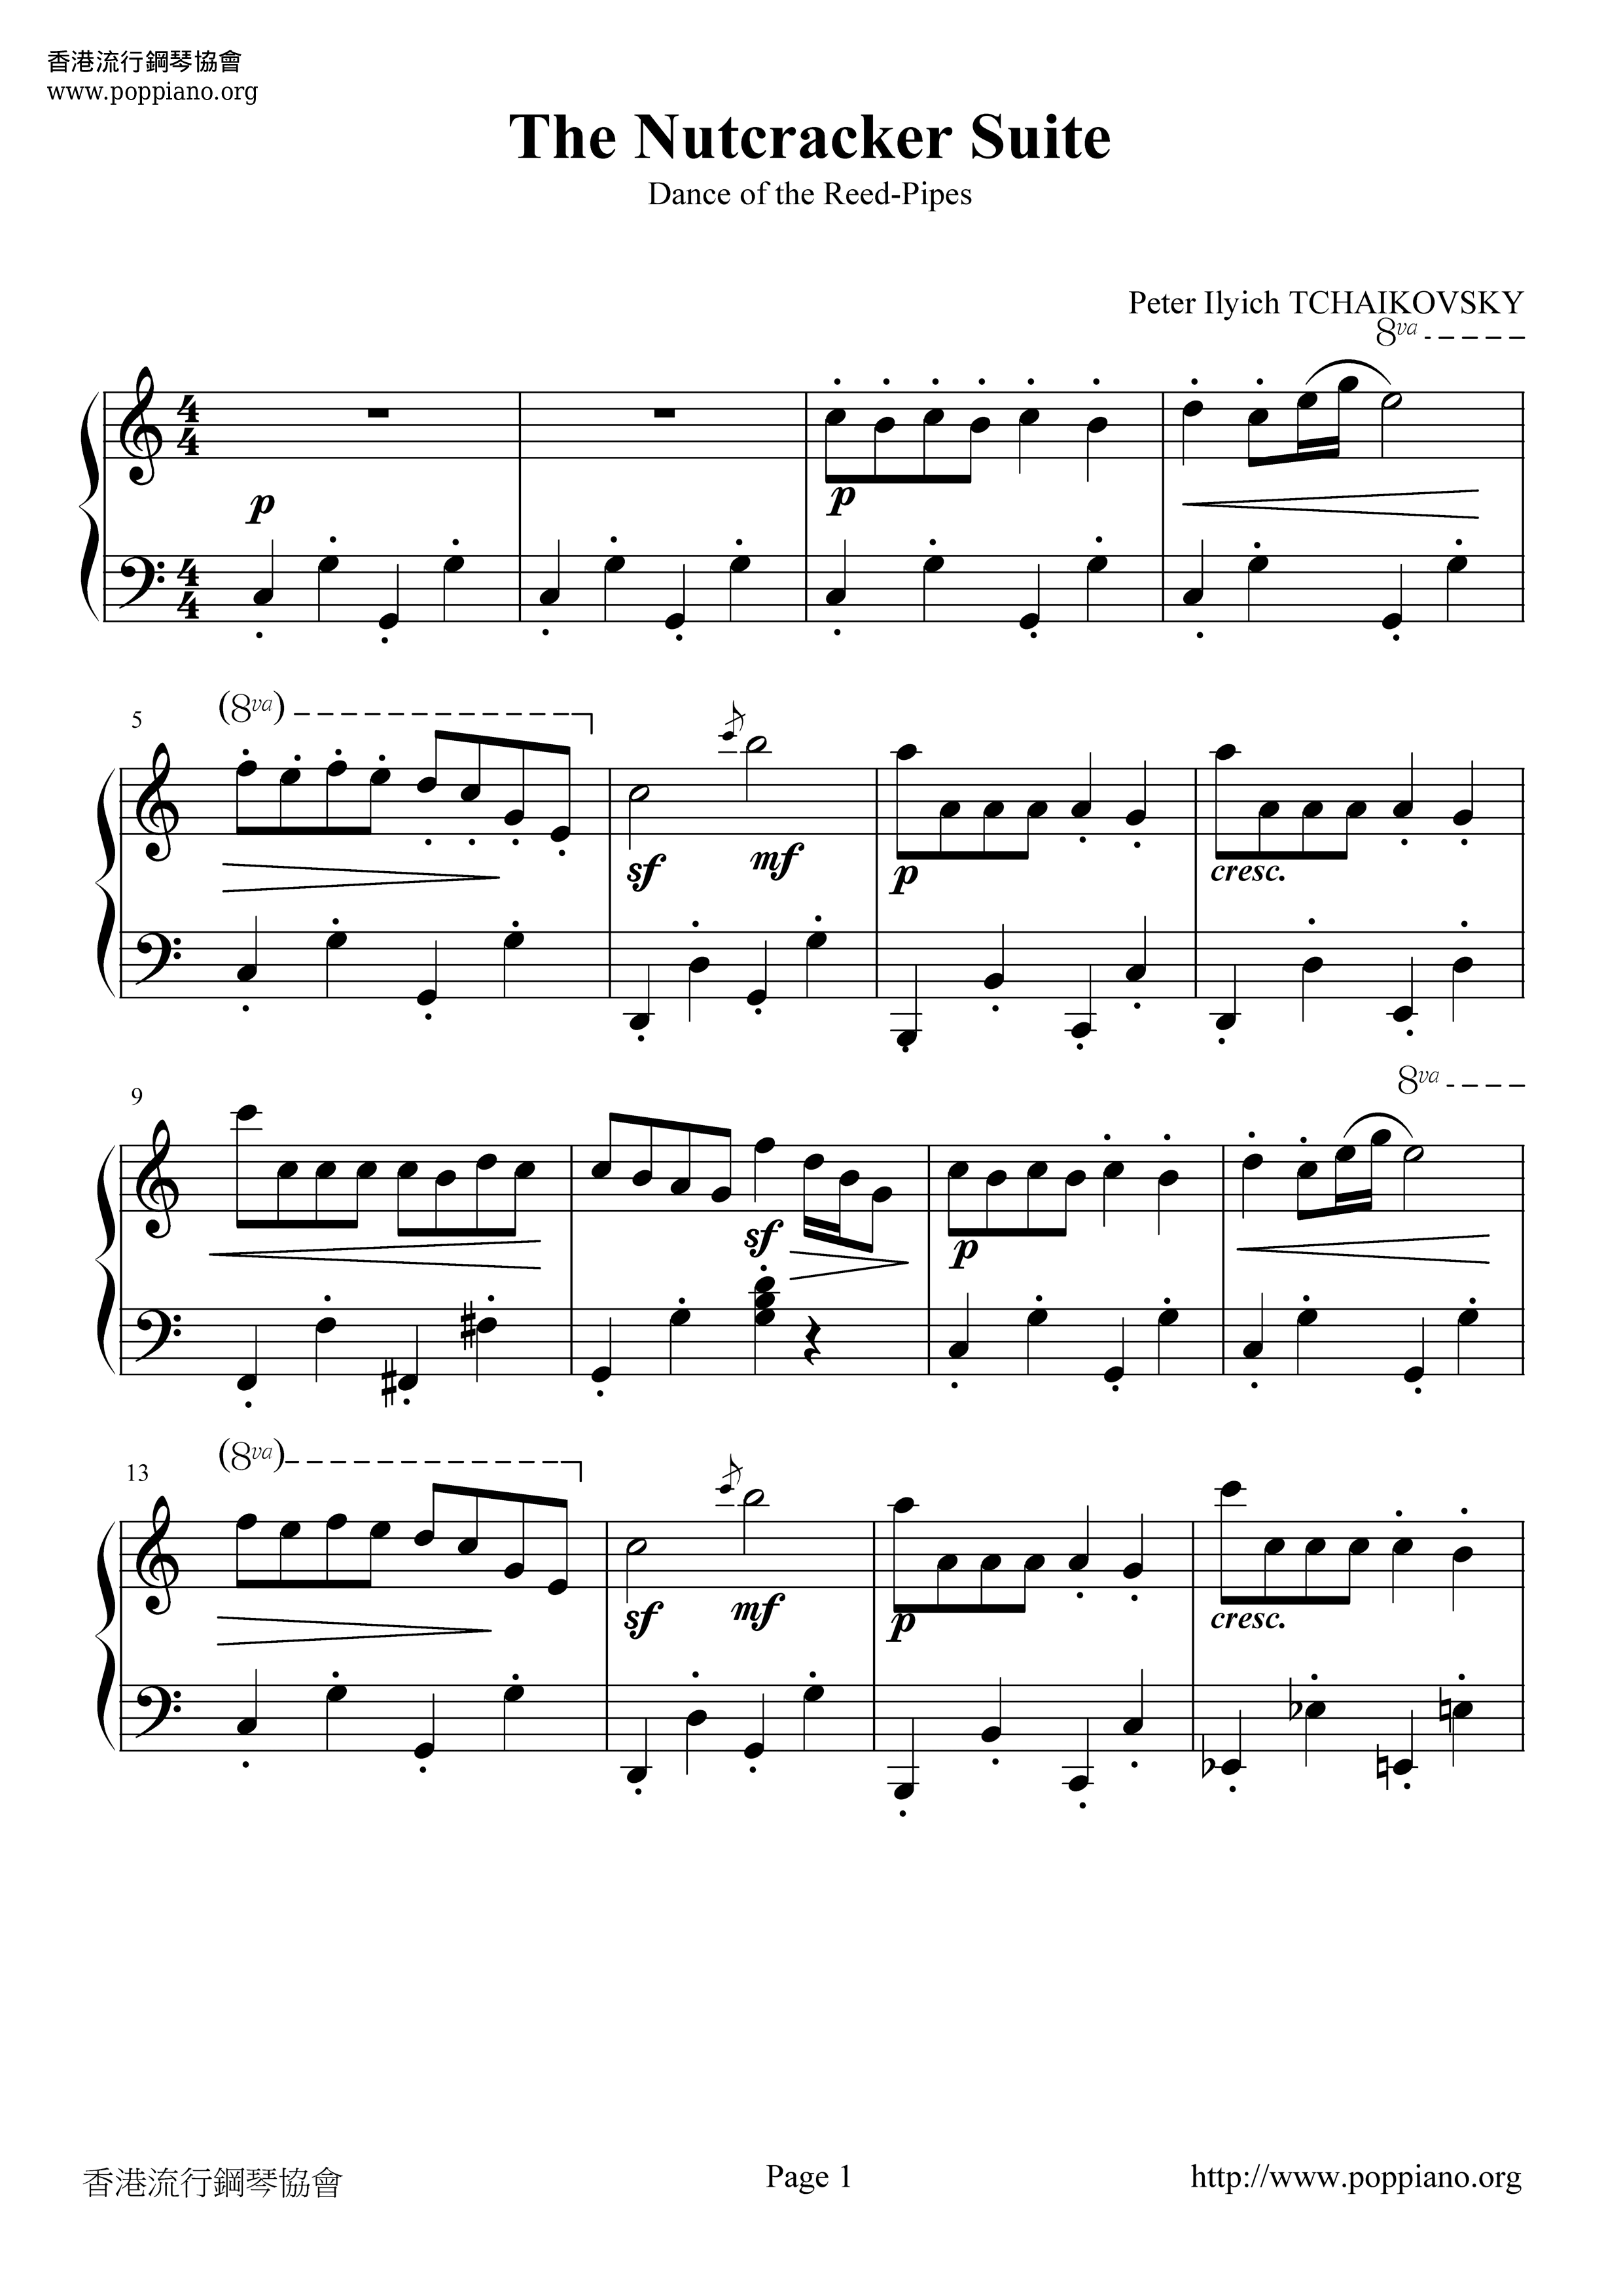 The Nutcracker Suite Score